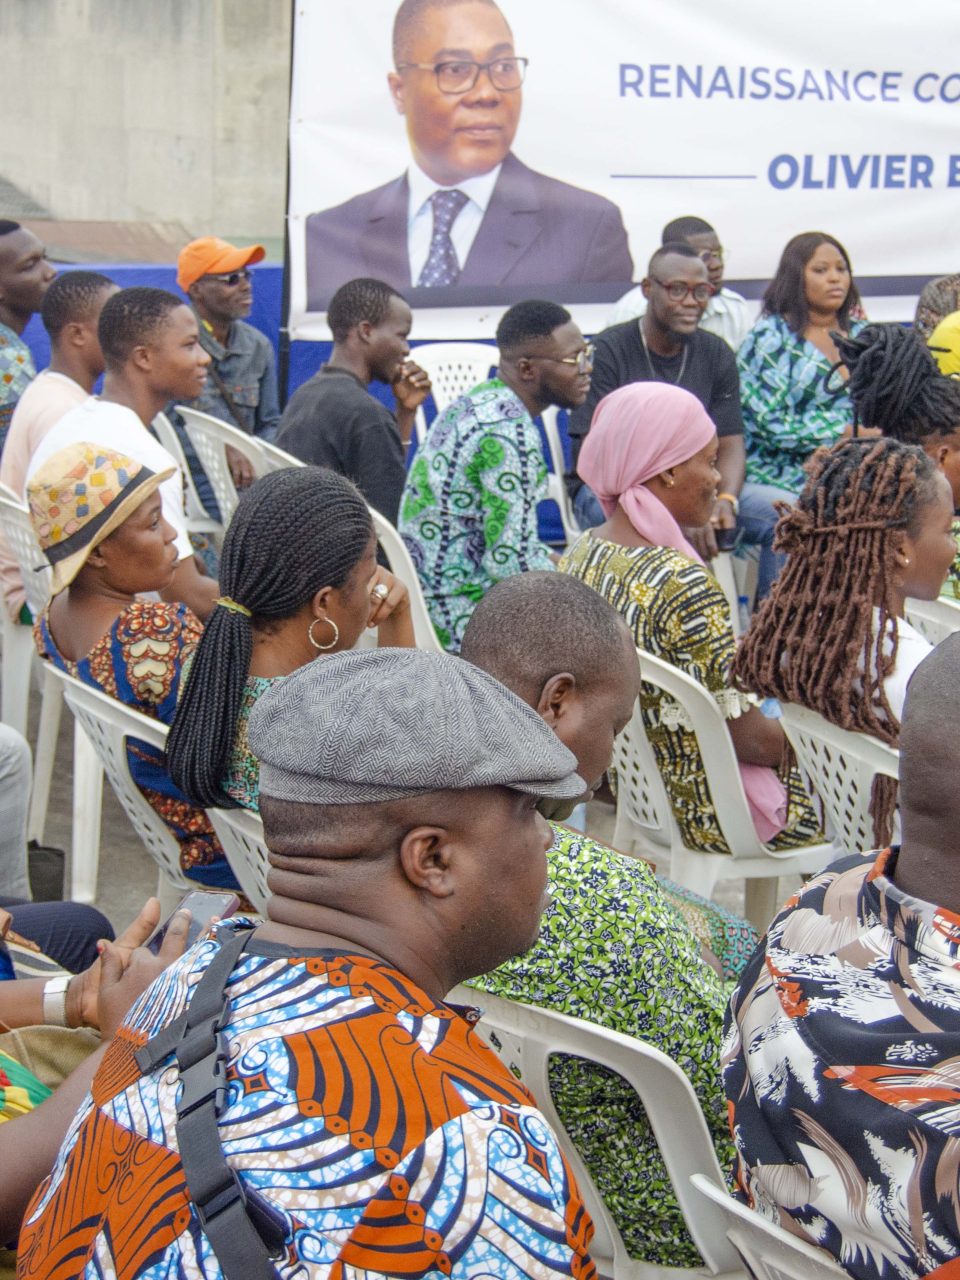 Présidentielle 2026 au Bénin – Les dessous de Renaissance à Cotonou avec Olivier Boko